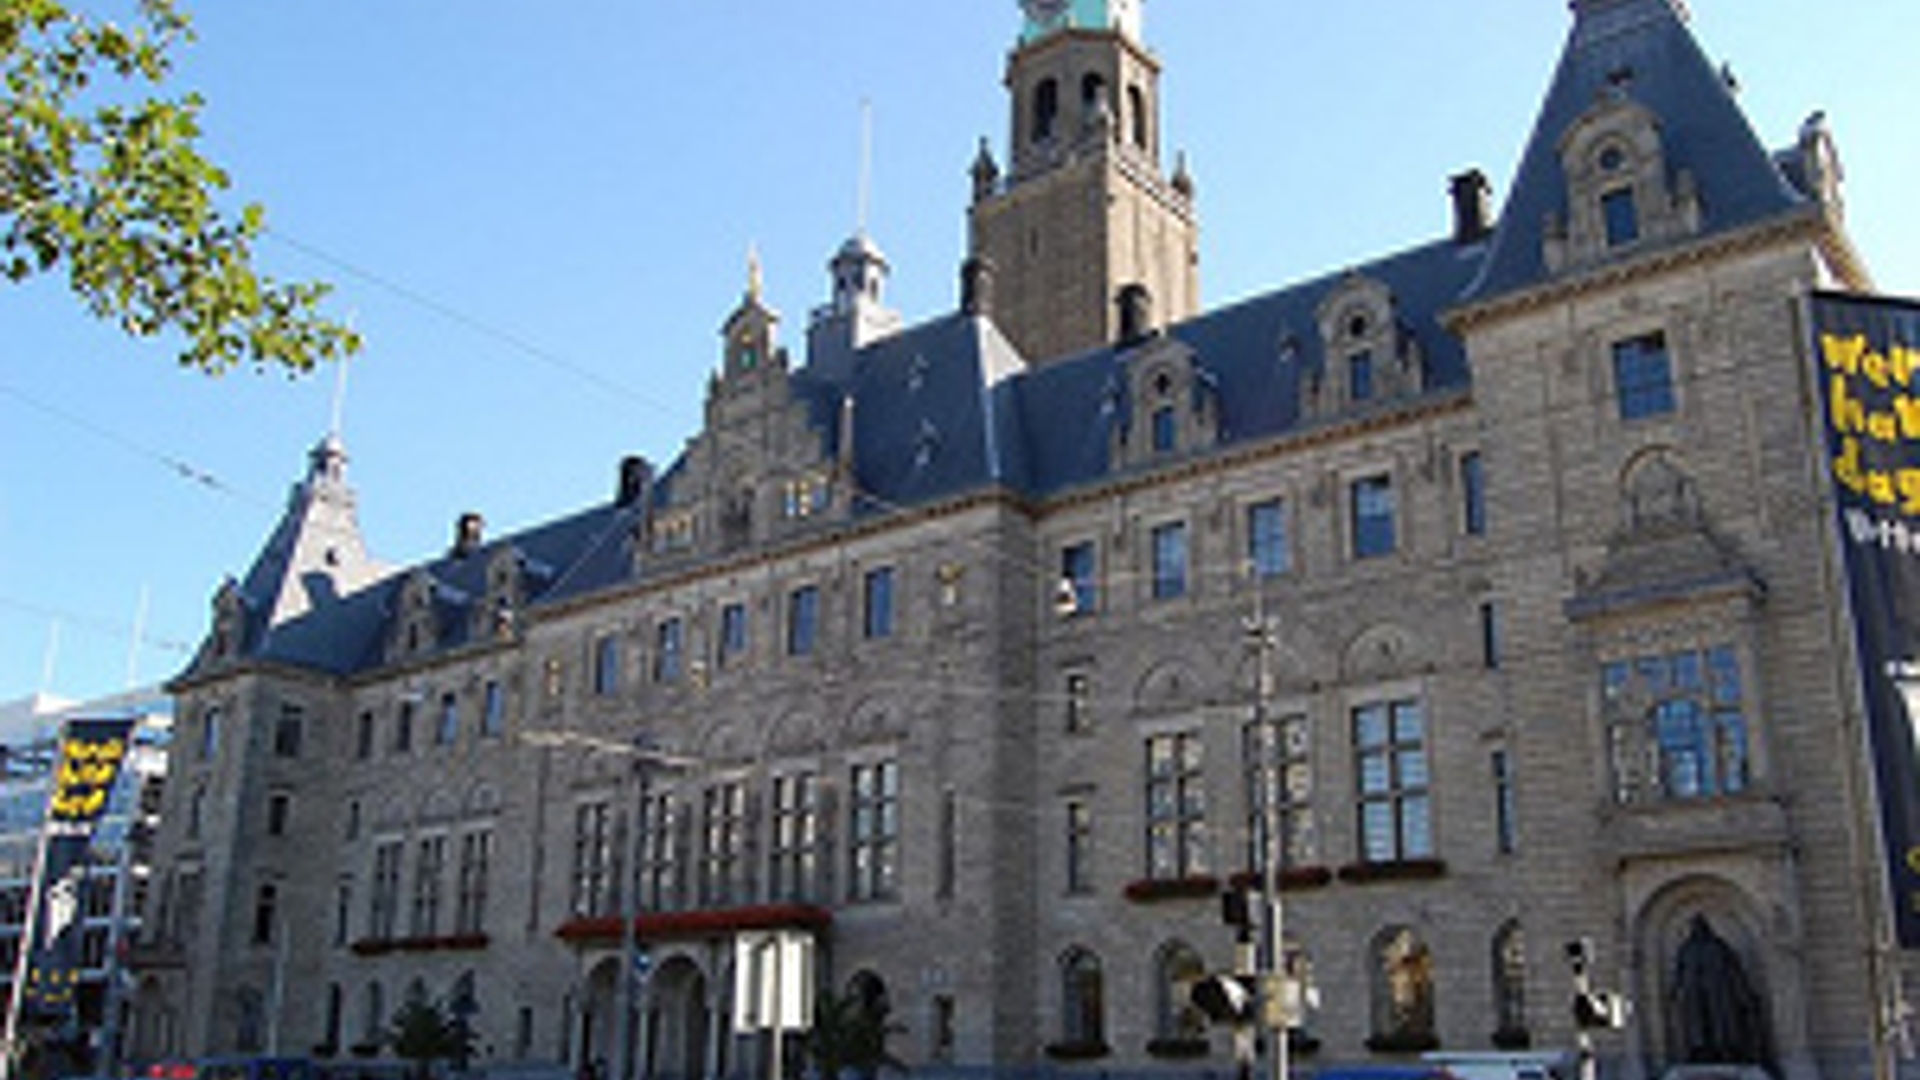 flickr-rotterdam-gemeentehuis-300px.jpg